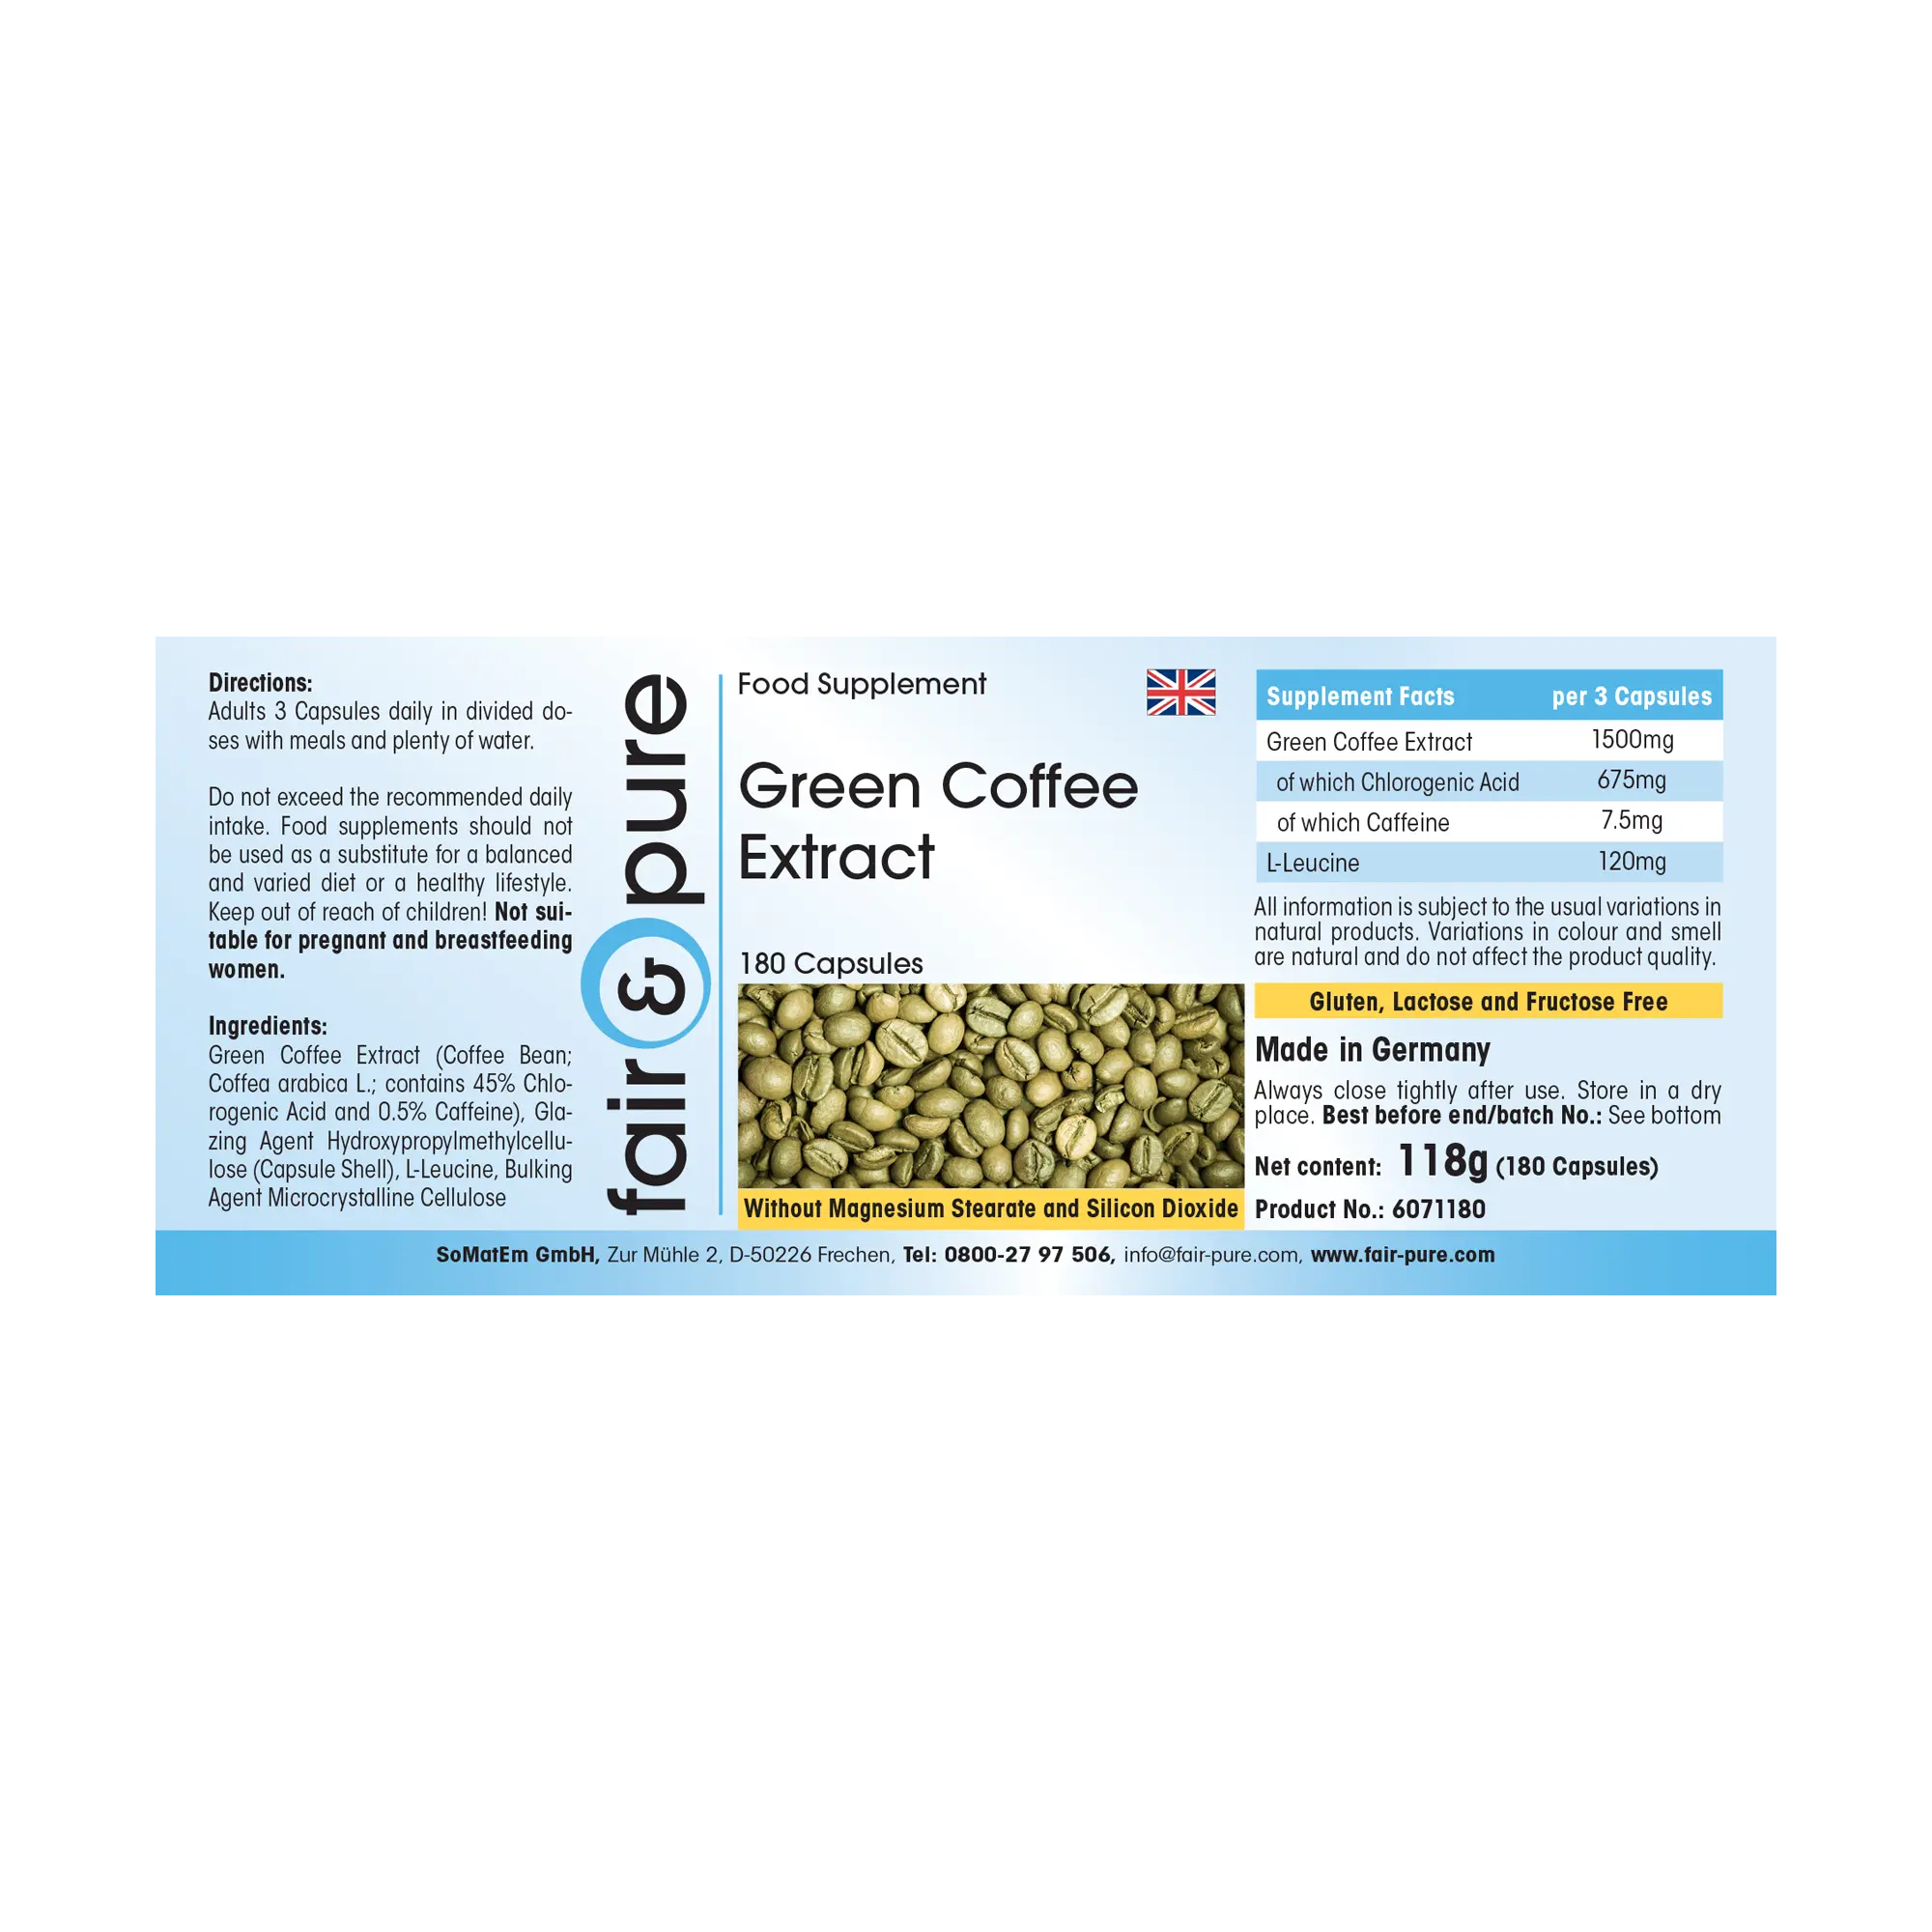 Grüner Kaffee Extrakt 500mg